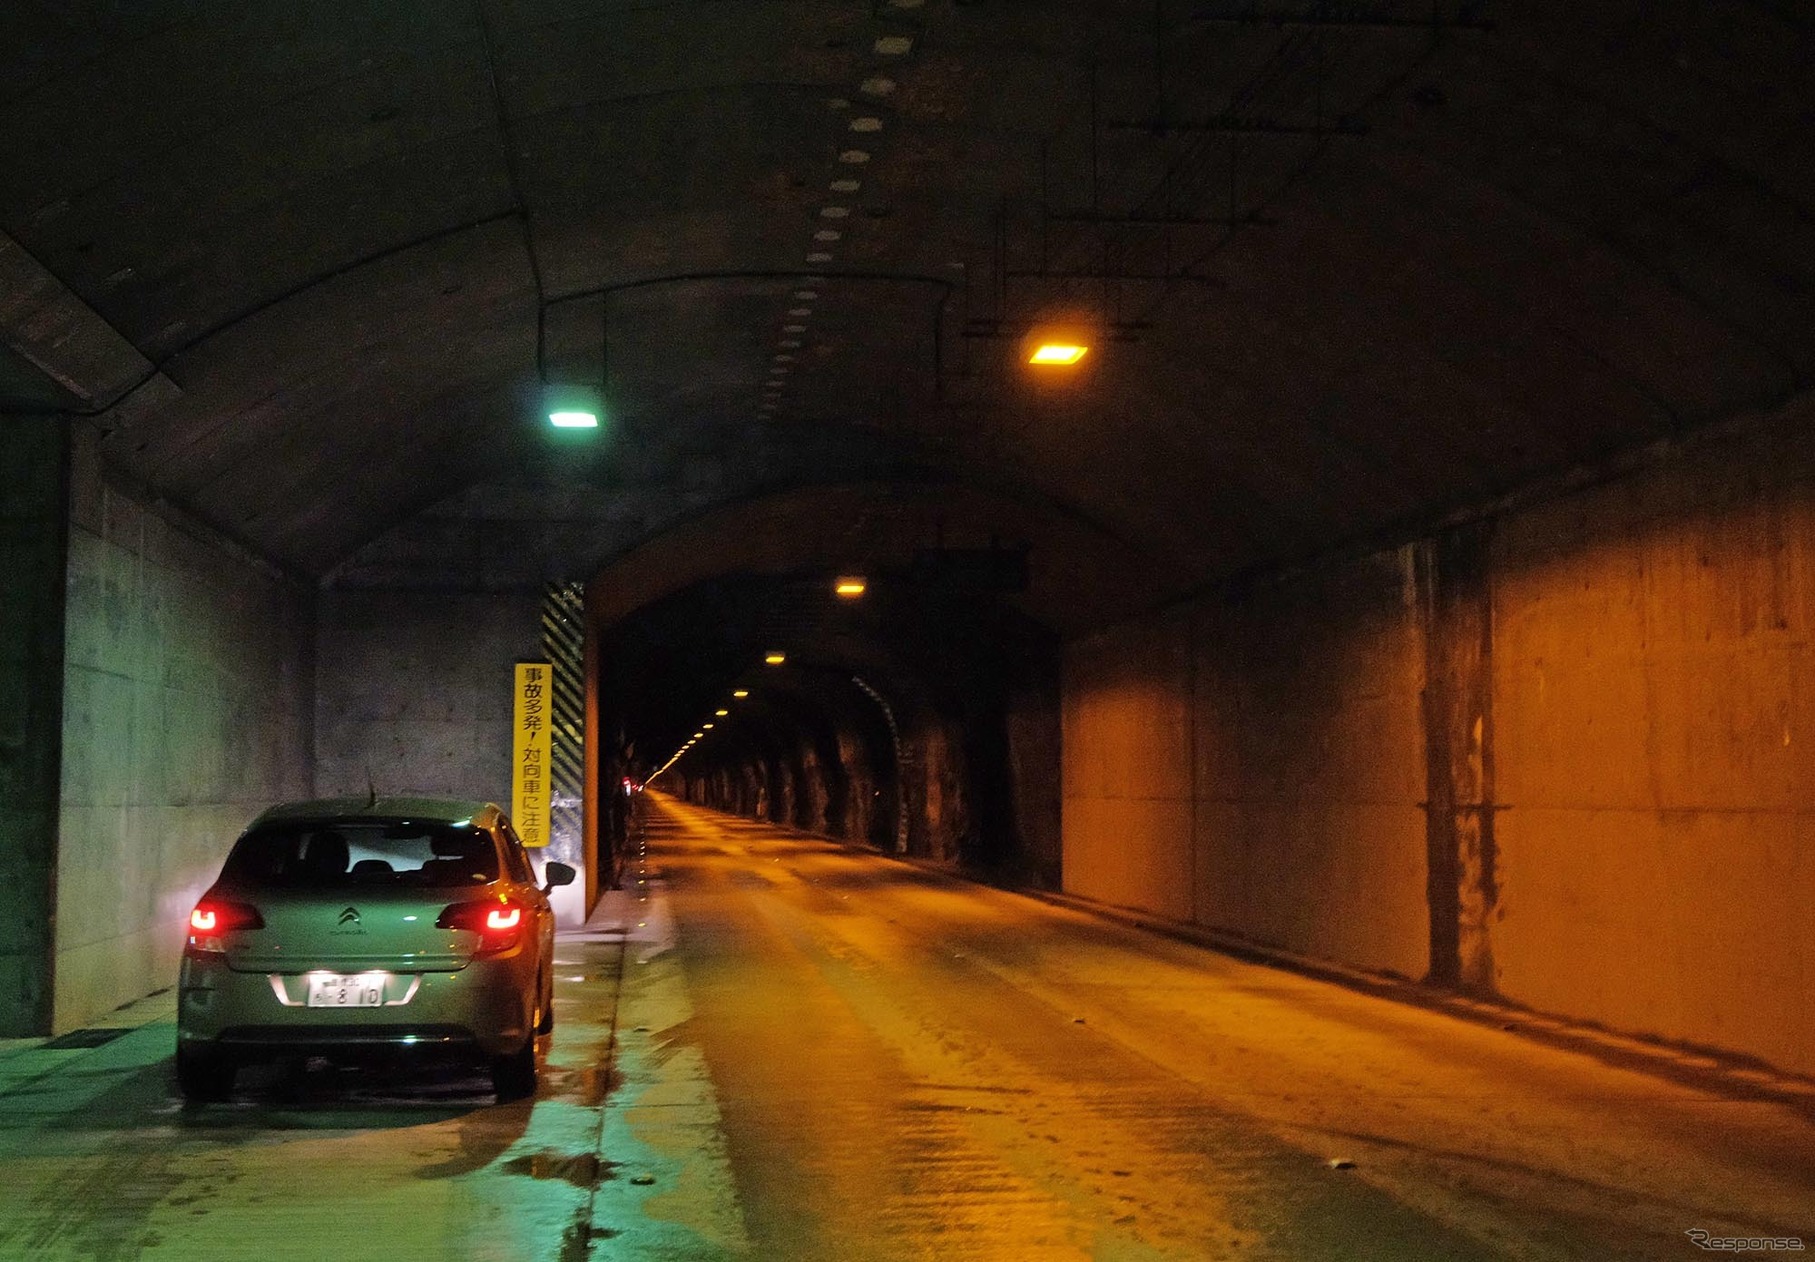 シルバーラインは長短19個のトンネルが続くルート。とくにルート後半のトンネルは長く、しかもトンネル同士の切れ目もごくわずかなため、10kmにわたって電源開発トンネルをくぐりっぱなしというイメージ。